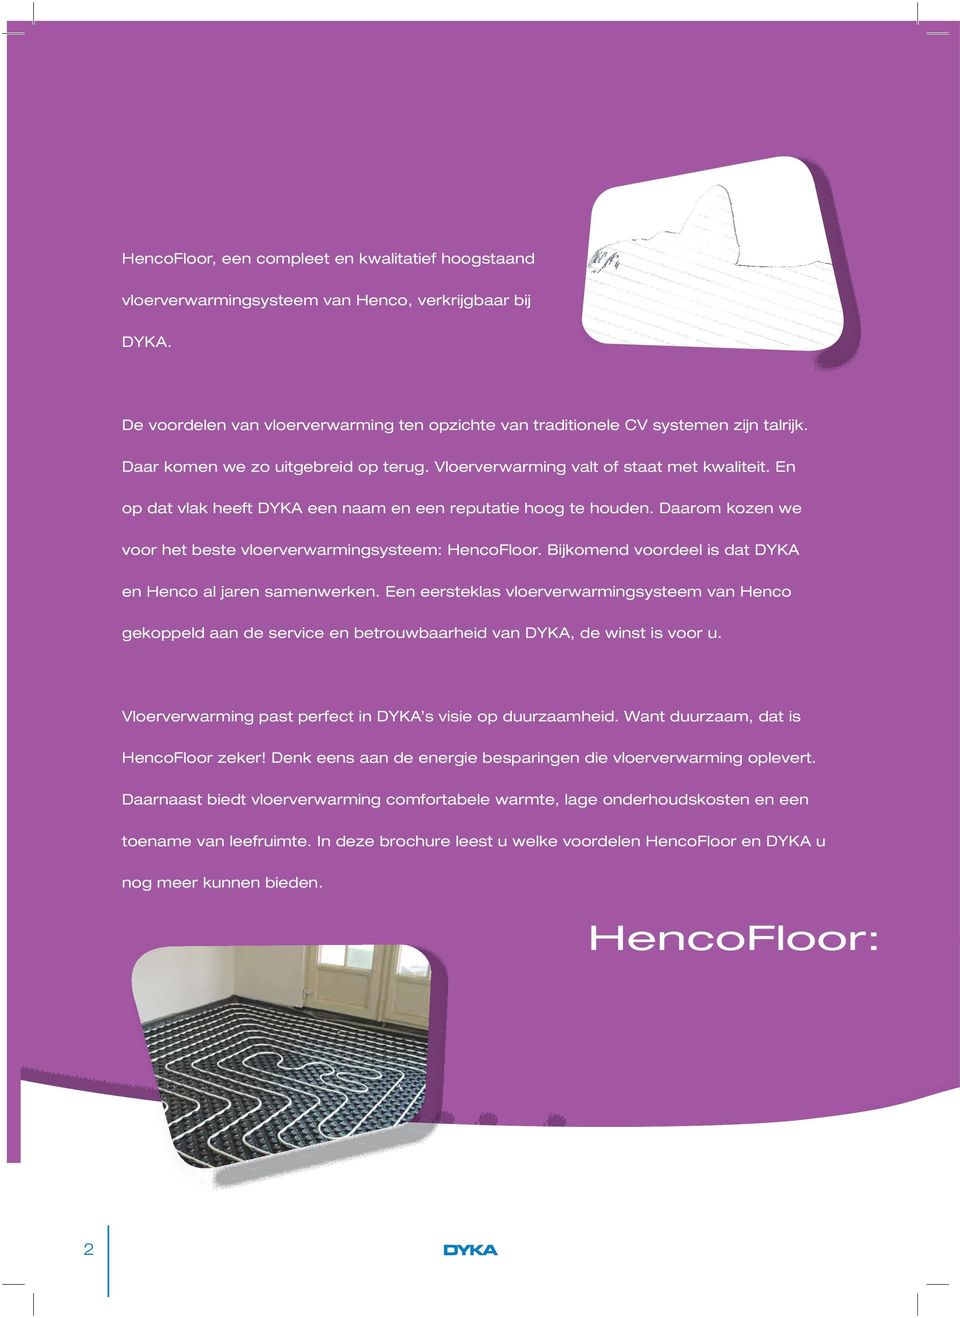 Daarom kozen we voor het beste vloerverwarmingsysteem: HencoFloor. Bijkomend voordeel is dat DYKA en Henco al jaren samenwerken.